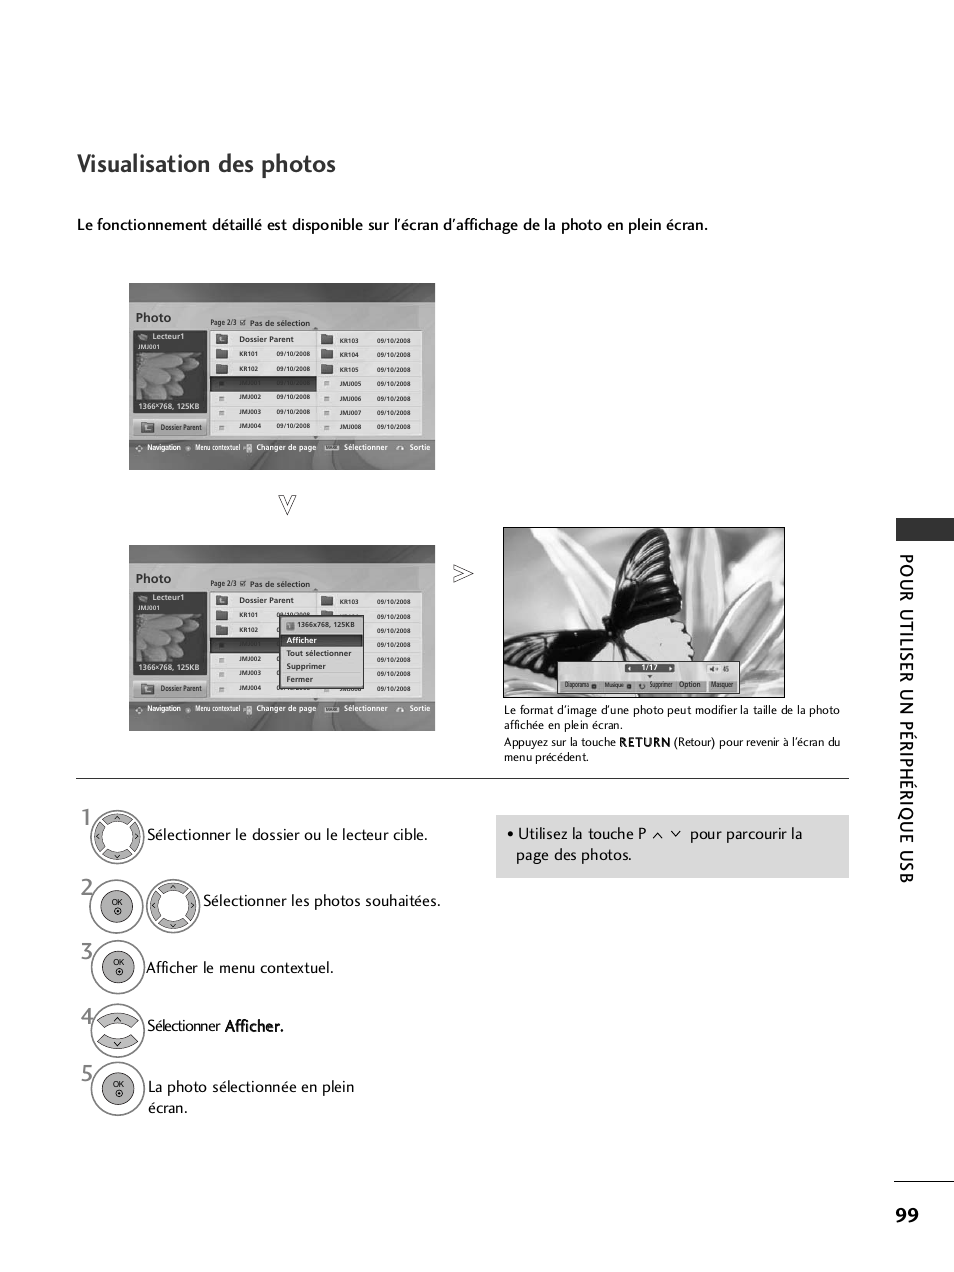 Visualisation des photos, Pour utiliser un périphérique usb | LG 42LH9000 Manuel d'utilisation | Page 101 / 180